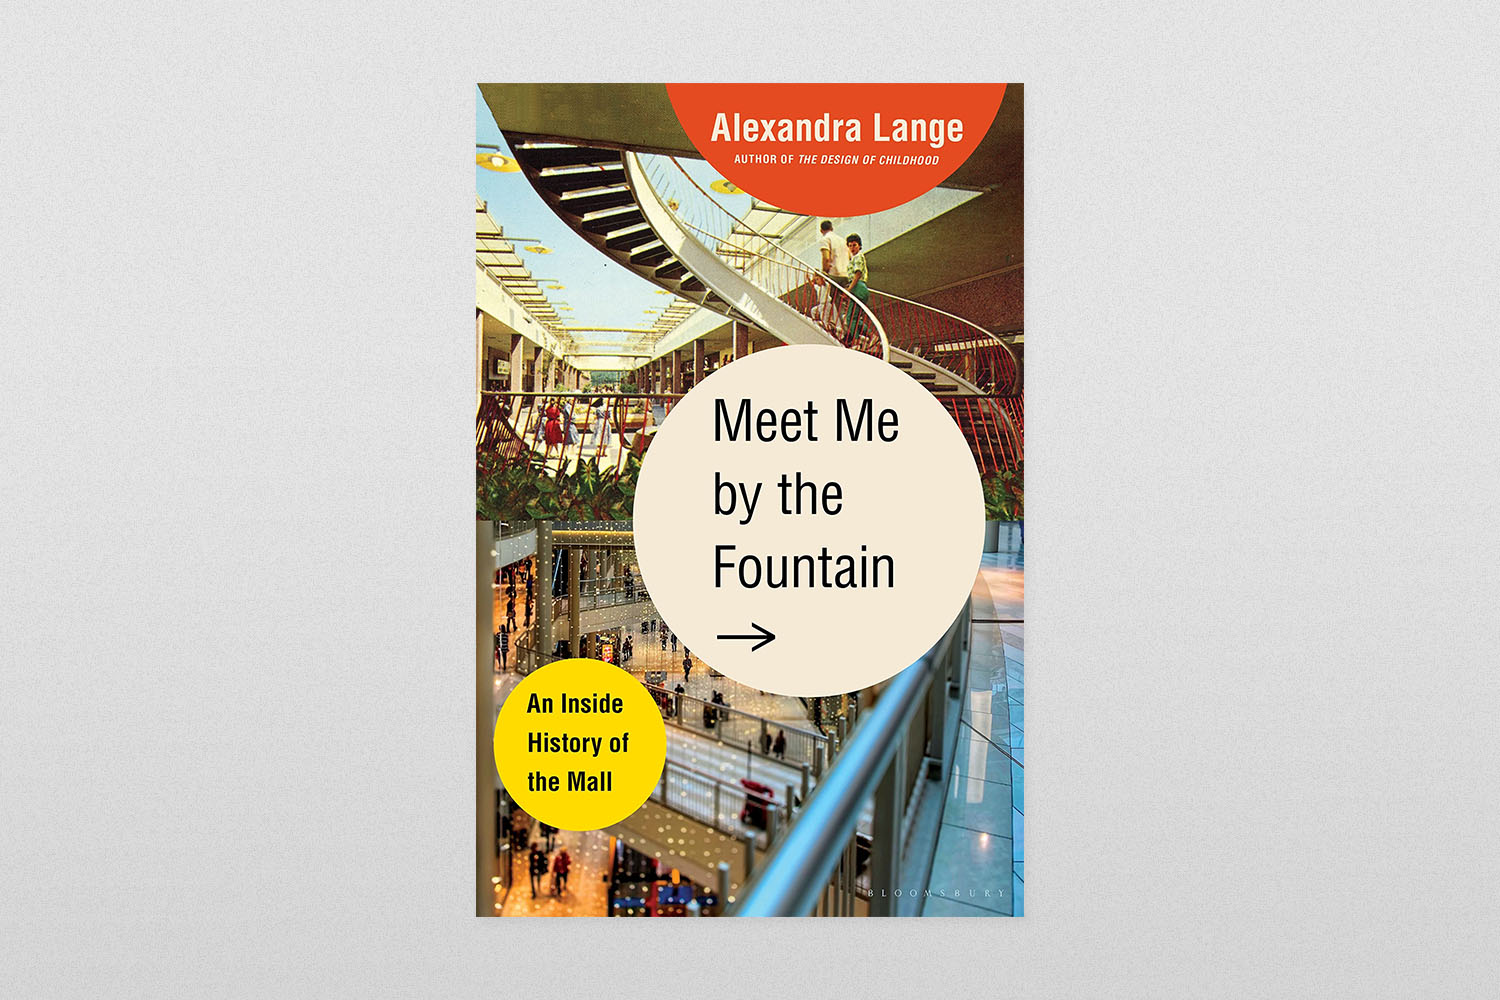 Upoznaj me kraj fontane - priča Alexandre Lange u trgovačkom centru